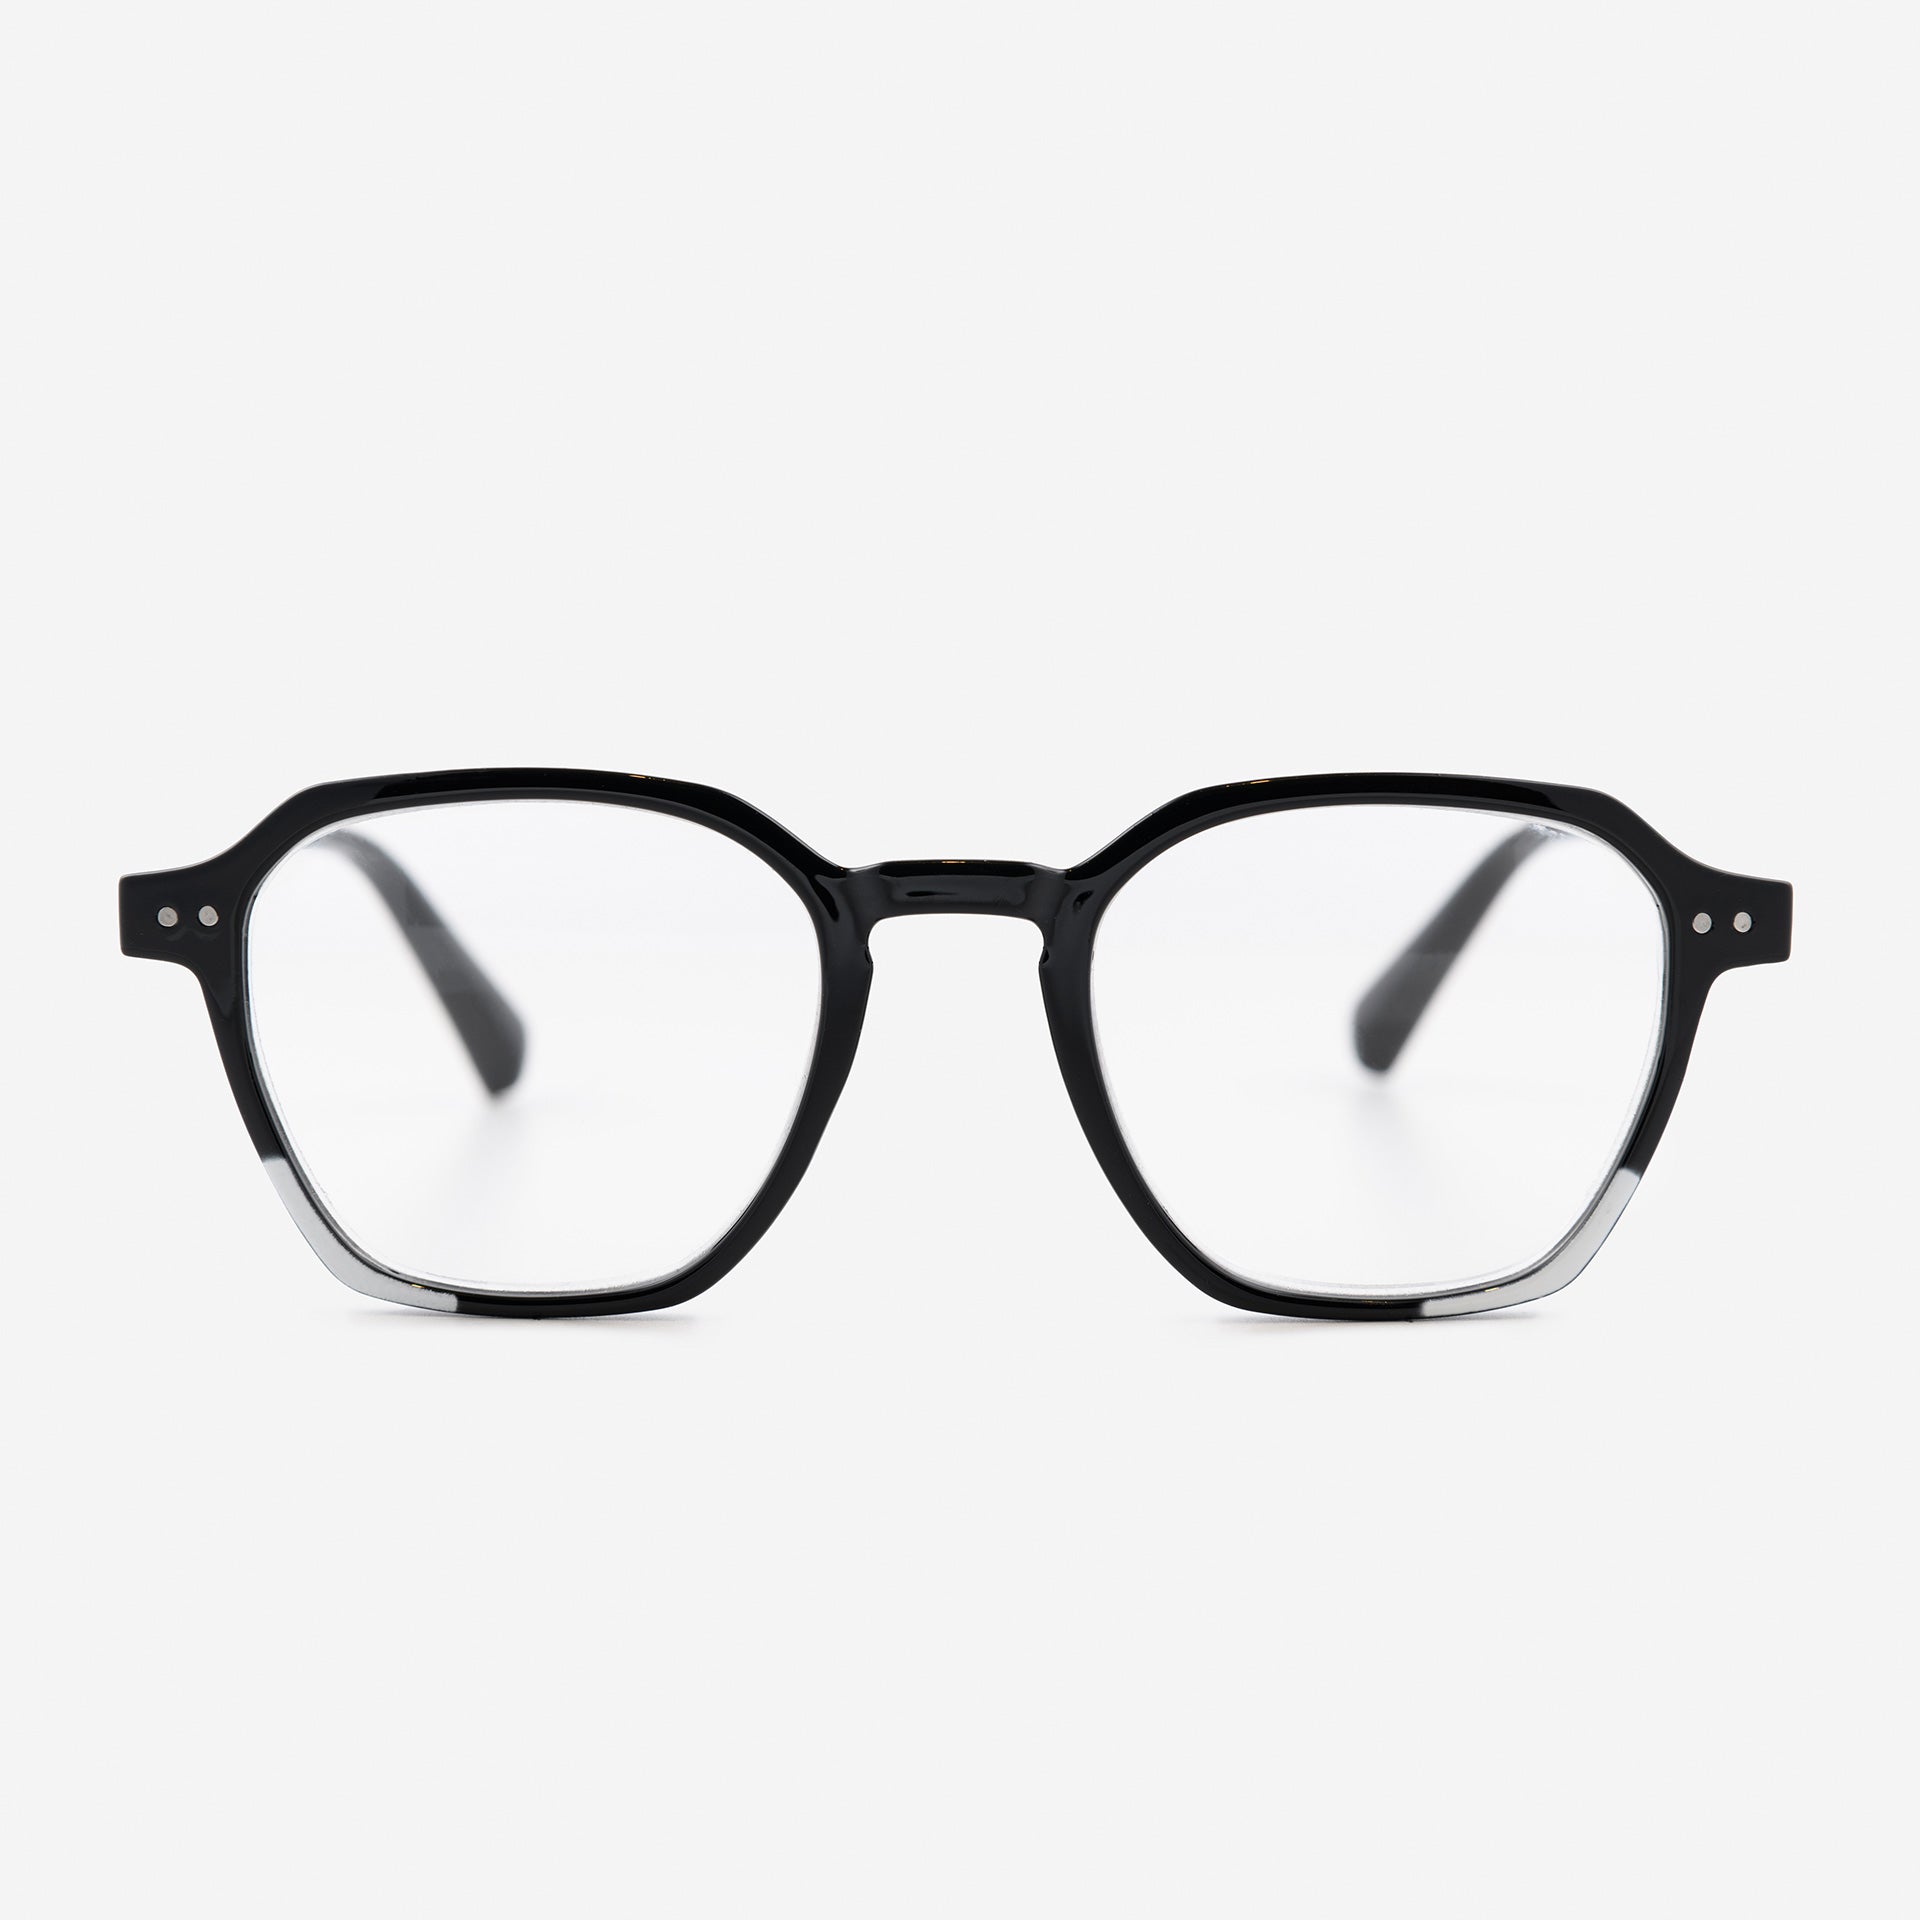 Black and White Hexagonal Reading Glasses